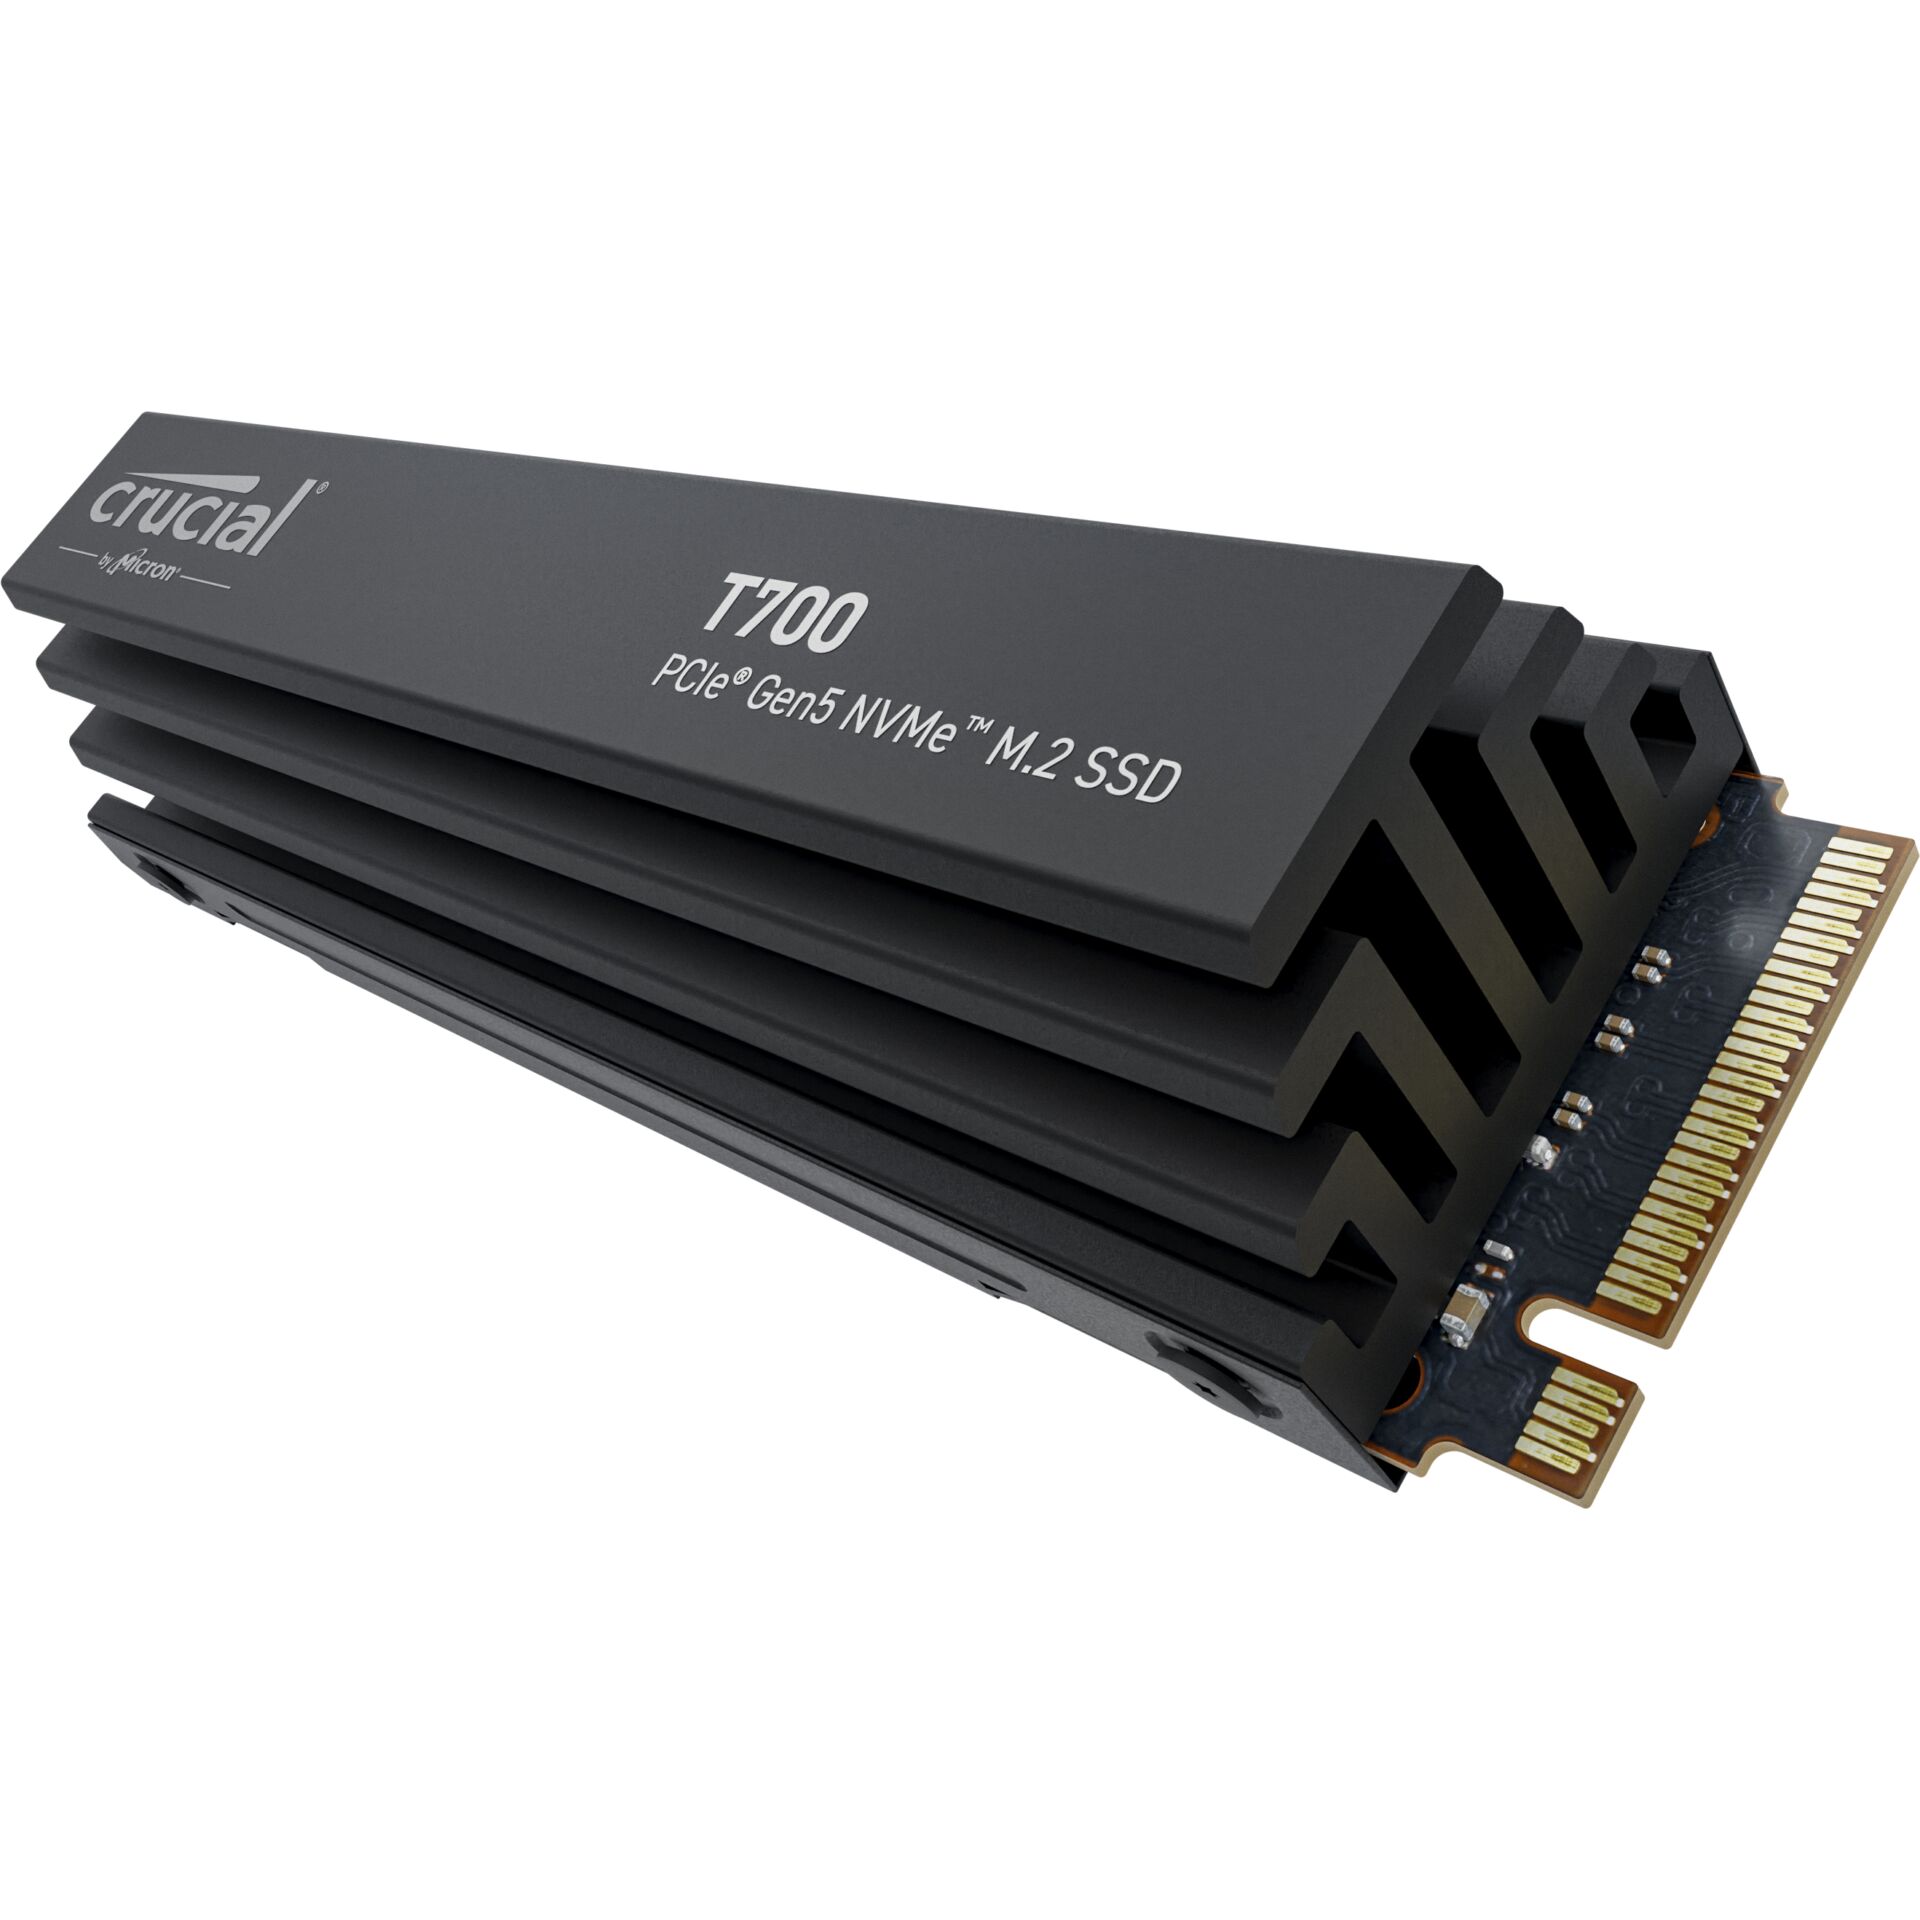 Crucial T700 con heatsink 4TB PCIe Gen5 NVMe M.2 SSD